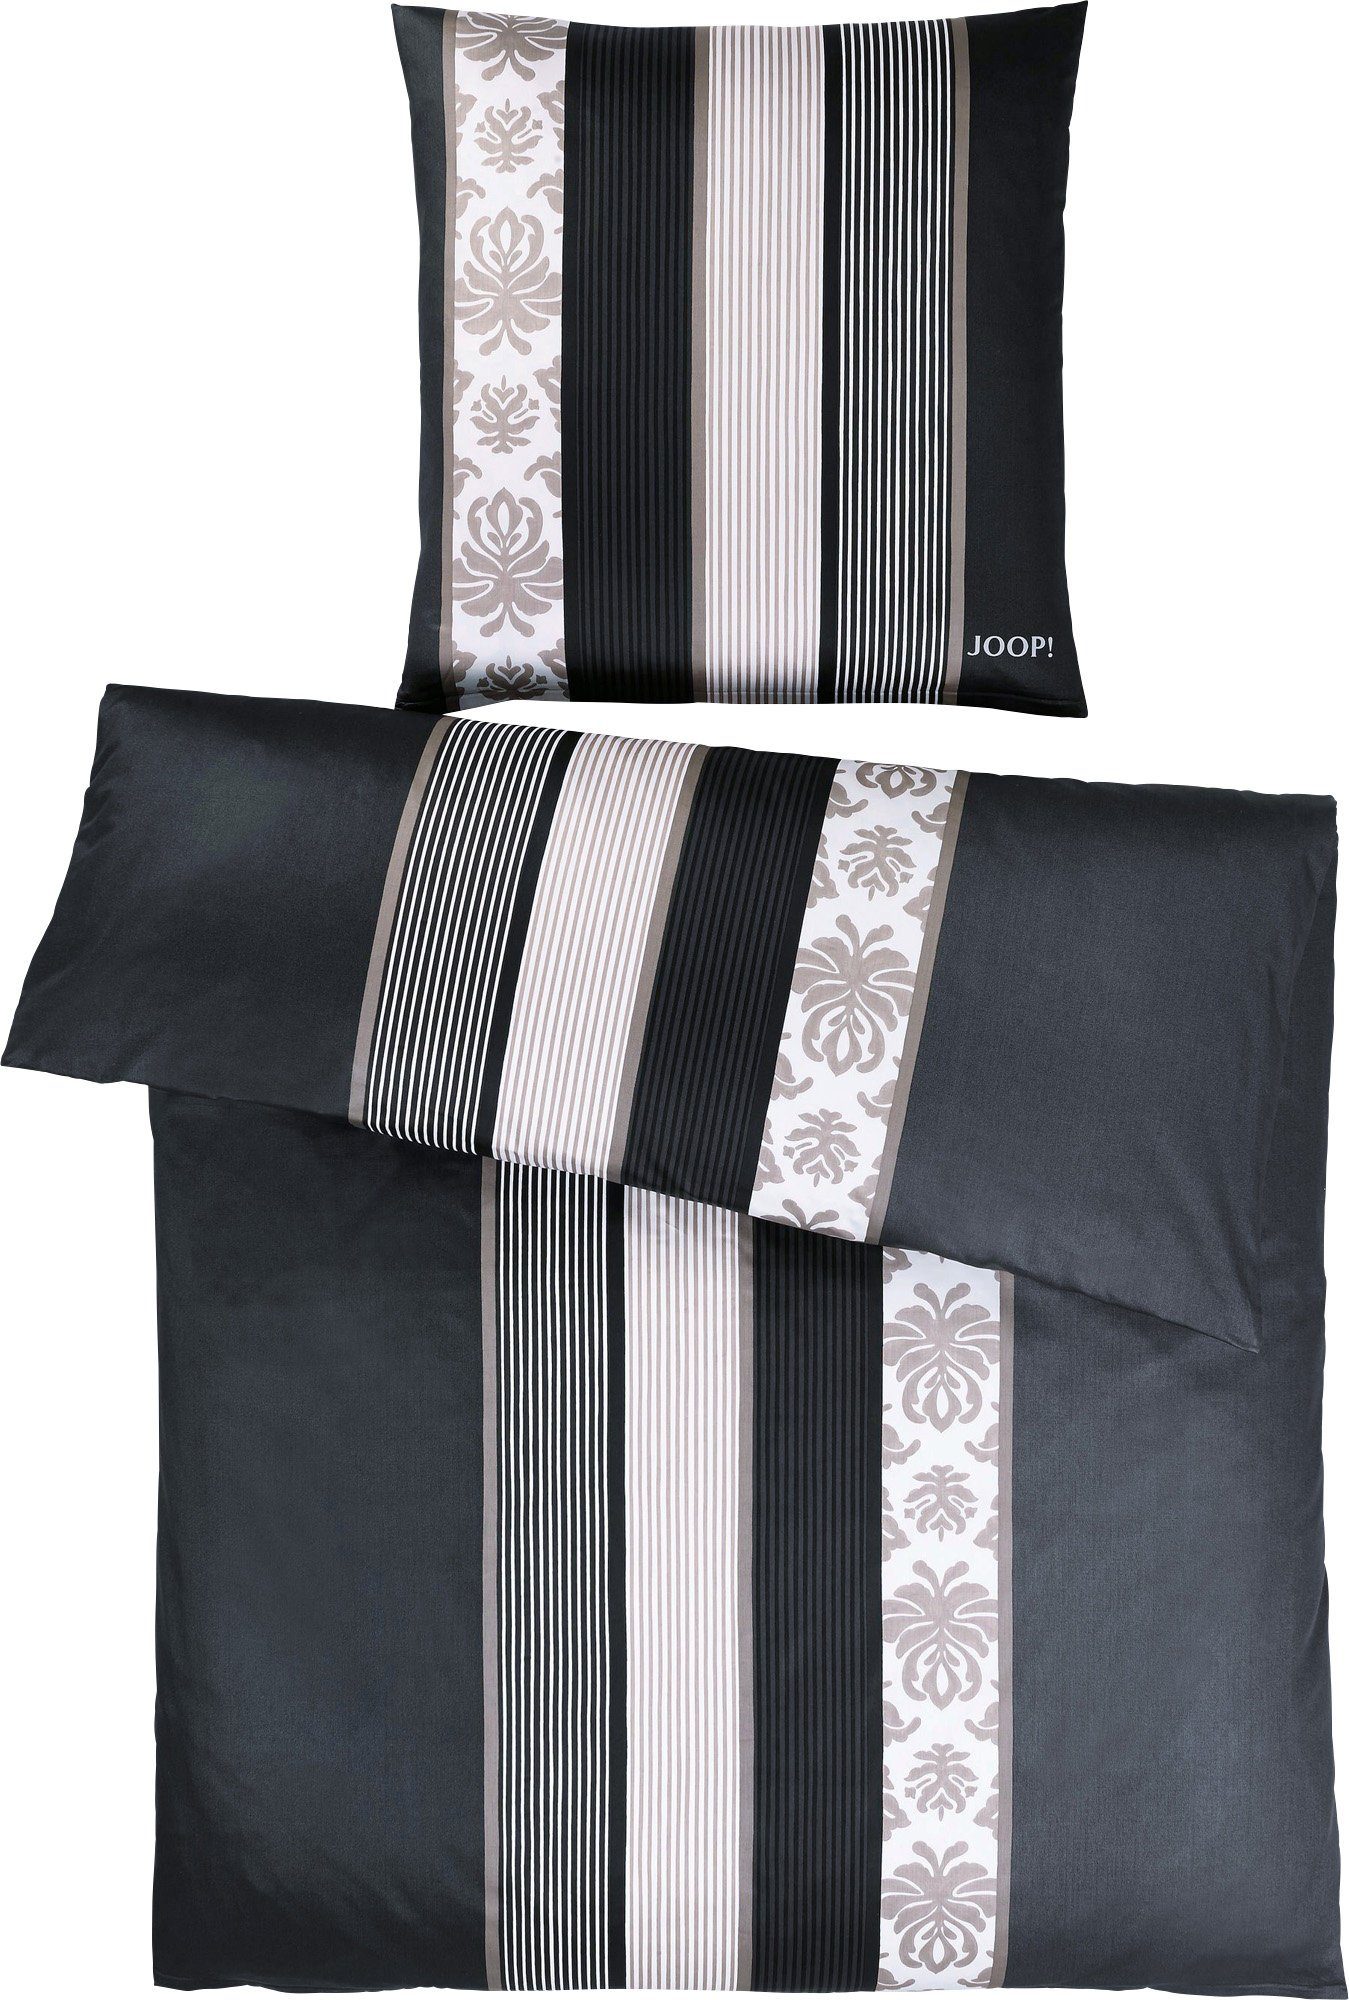 Bettwäsche Bettwäsche "Ornament Stripe", schwarz Streifen Joop!, teilig, Mako-Satin, 2